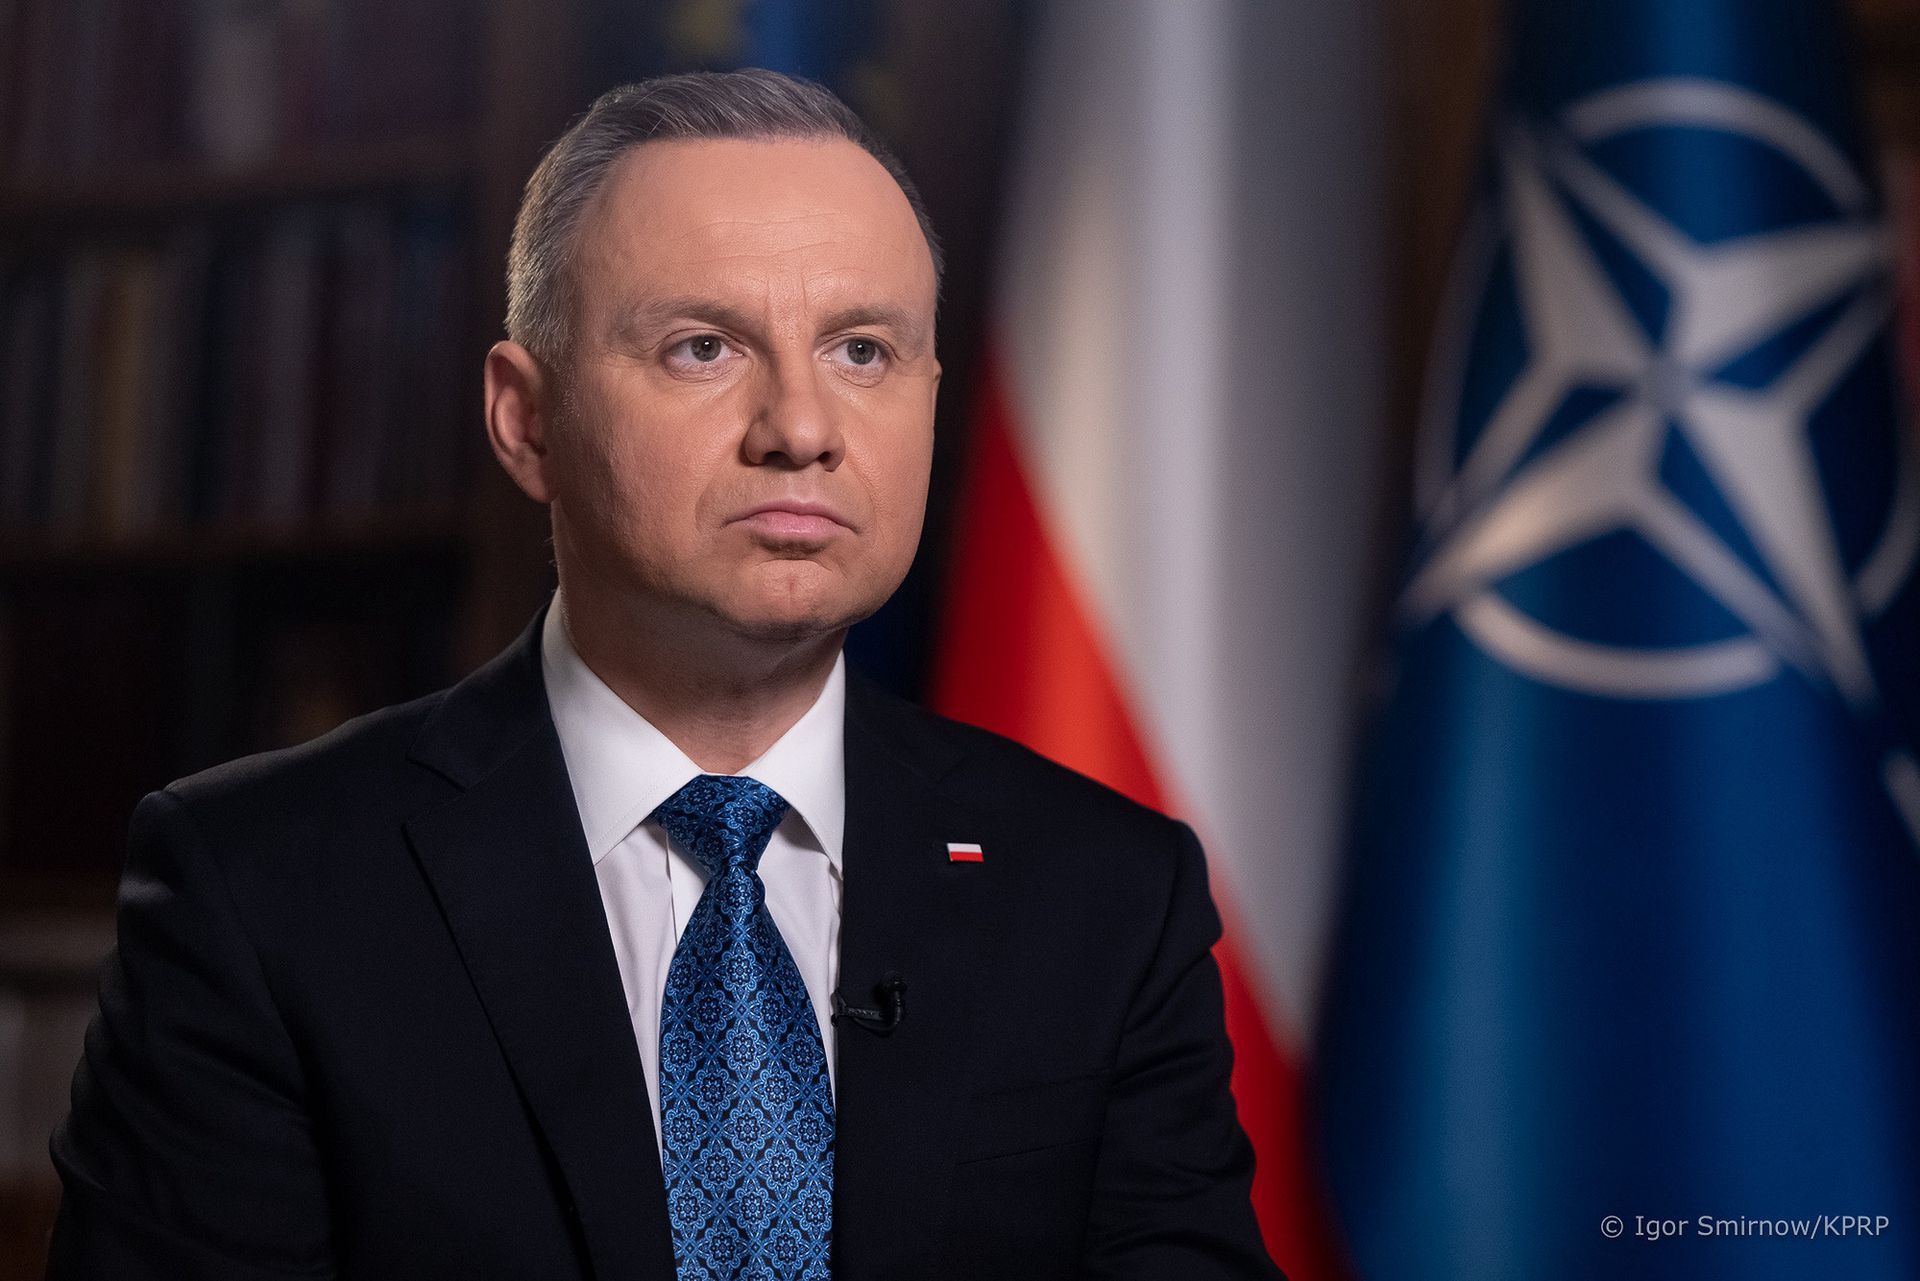 polska zawiesza traktat. duda podjął decyzję